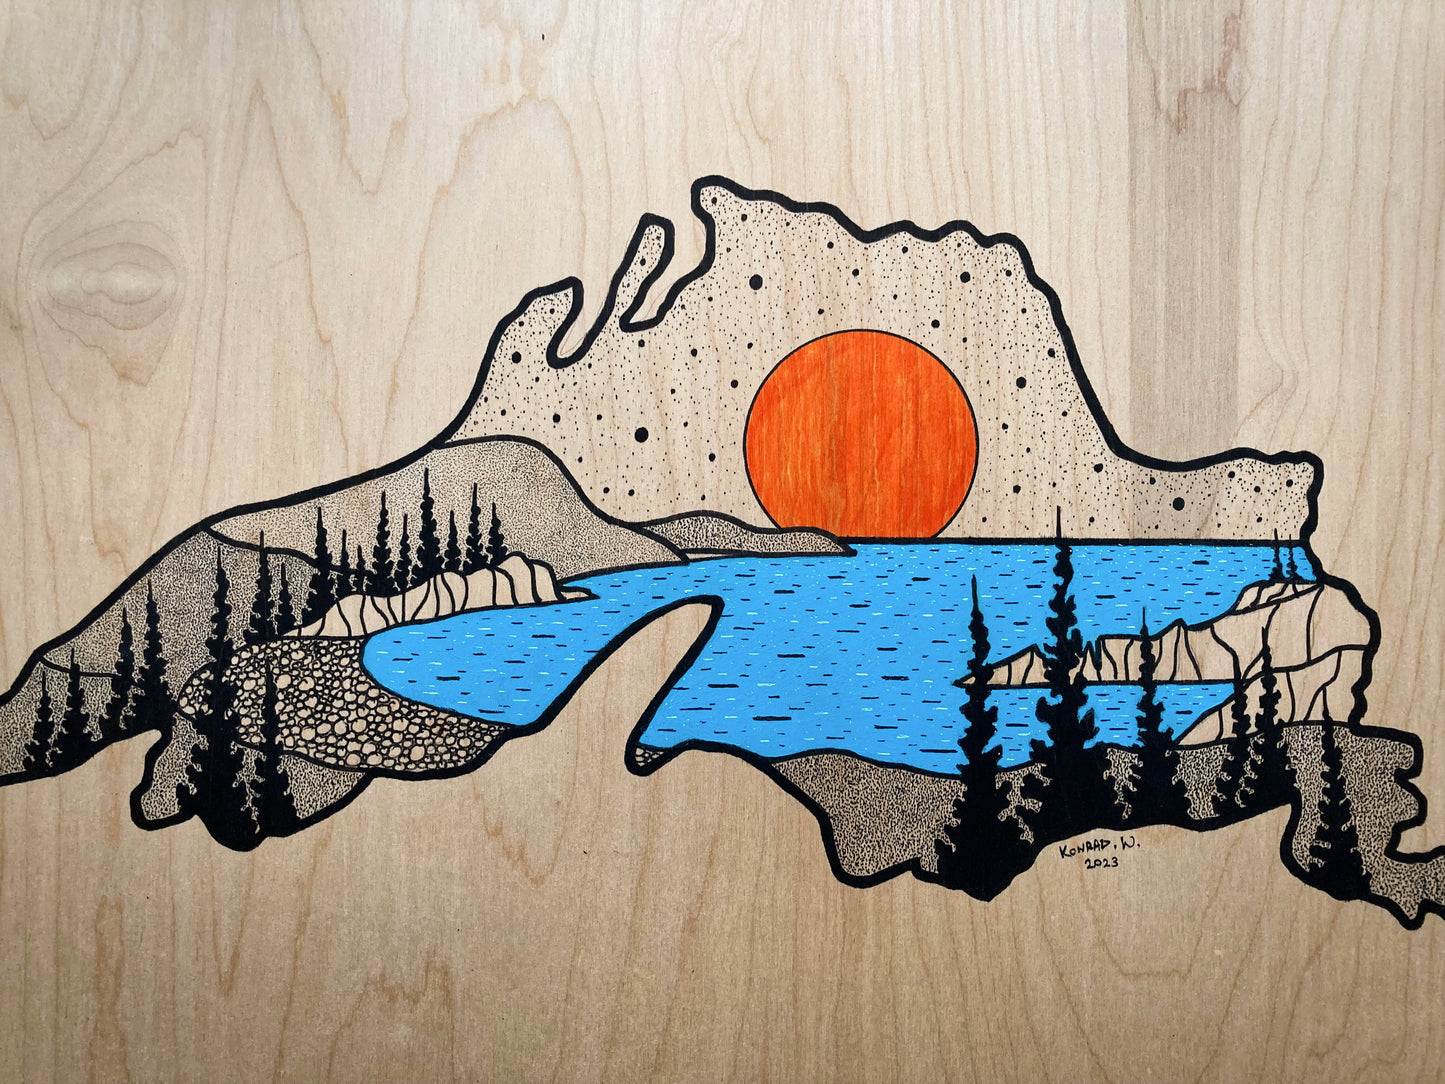 Noisy Bay - Lake Superior - ORIGINAL 18x24 Wood Panel Illustration